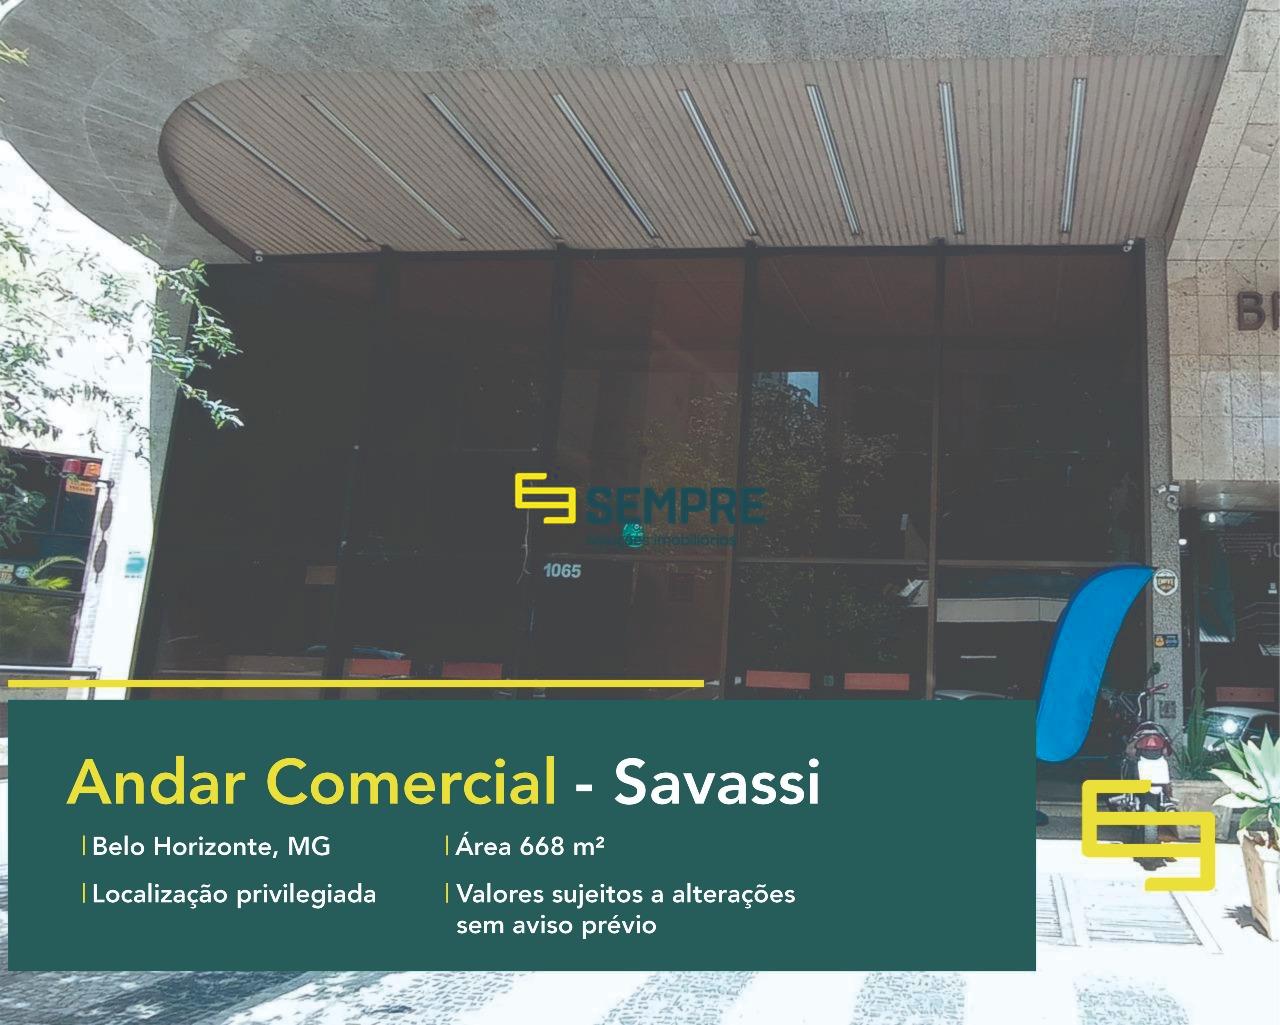 Andar térreo para alugar em Belo Horizonte no bairro Savassi, excelente localização. O estabelecimento comercial conta com área de 668 m².